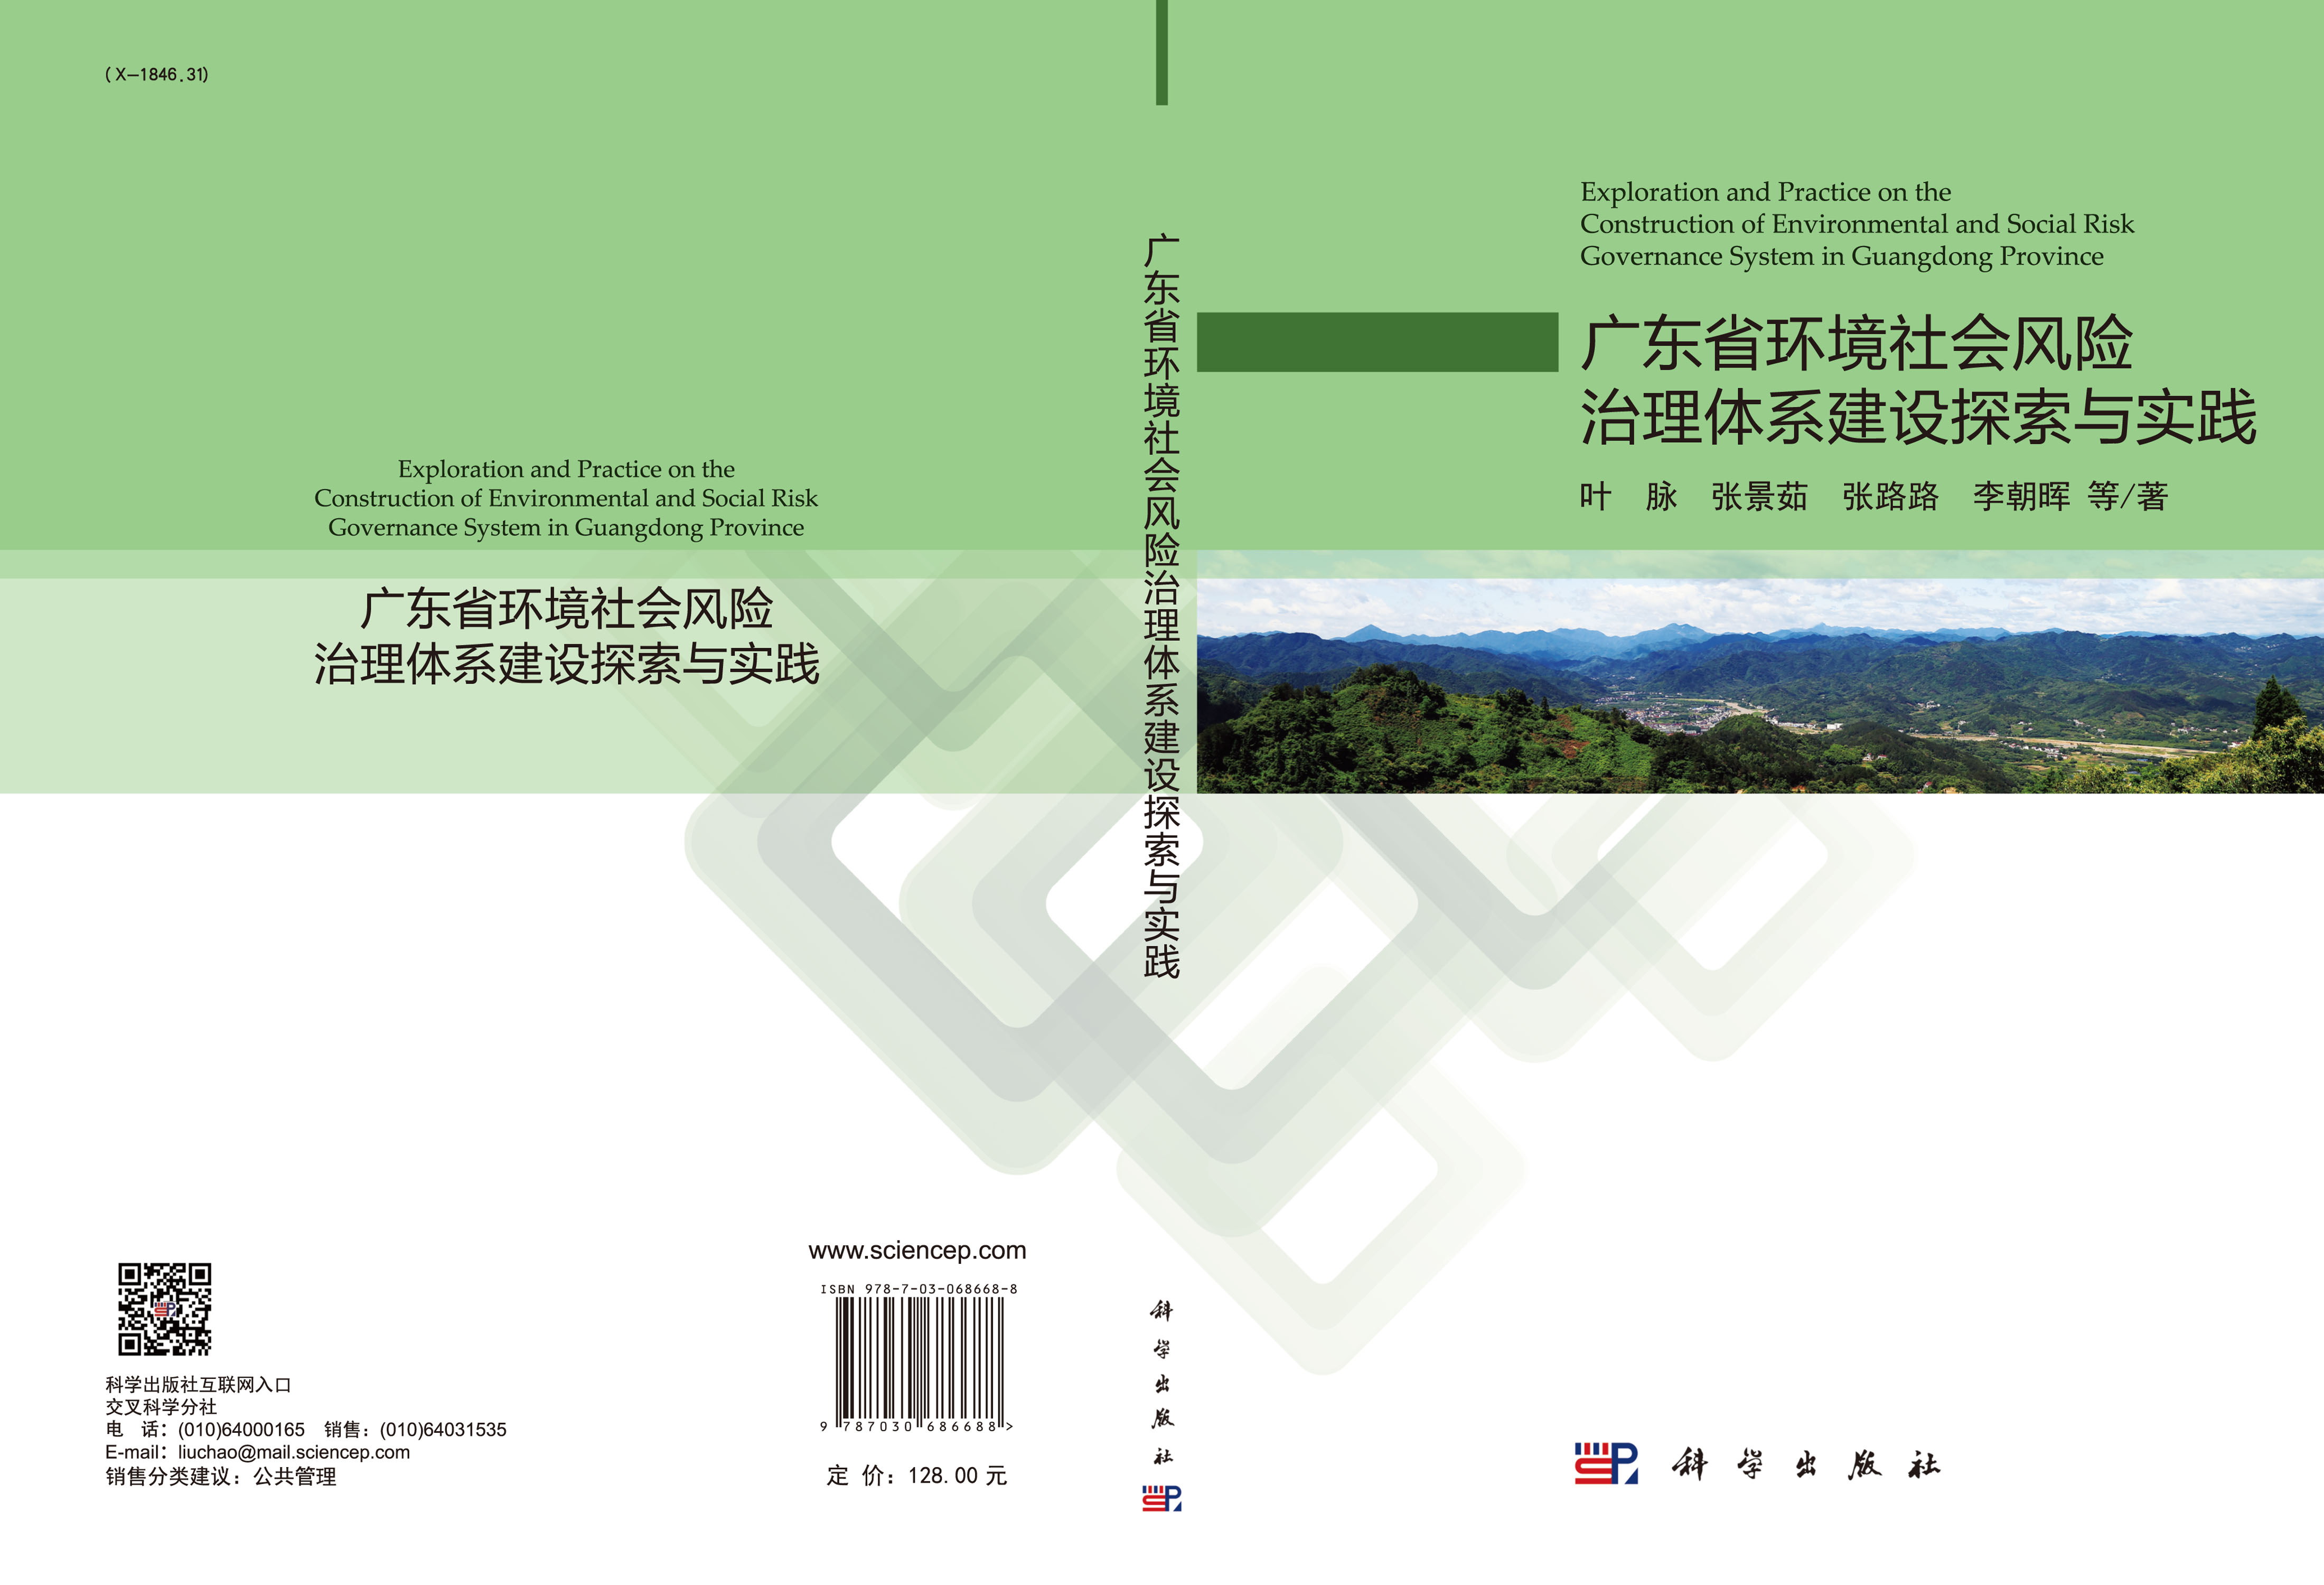 广东省环境社会风险治理体系建设探索与实践